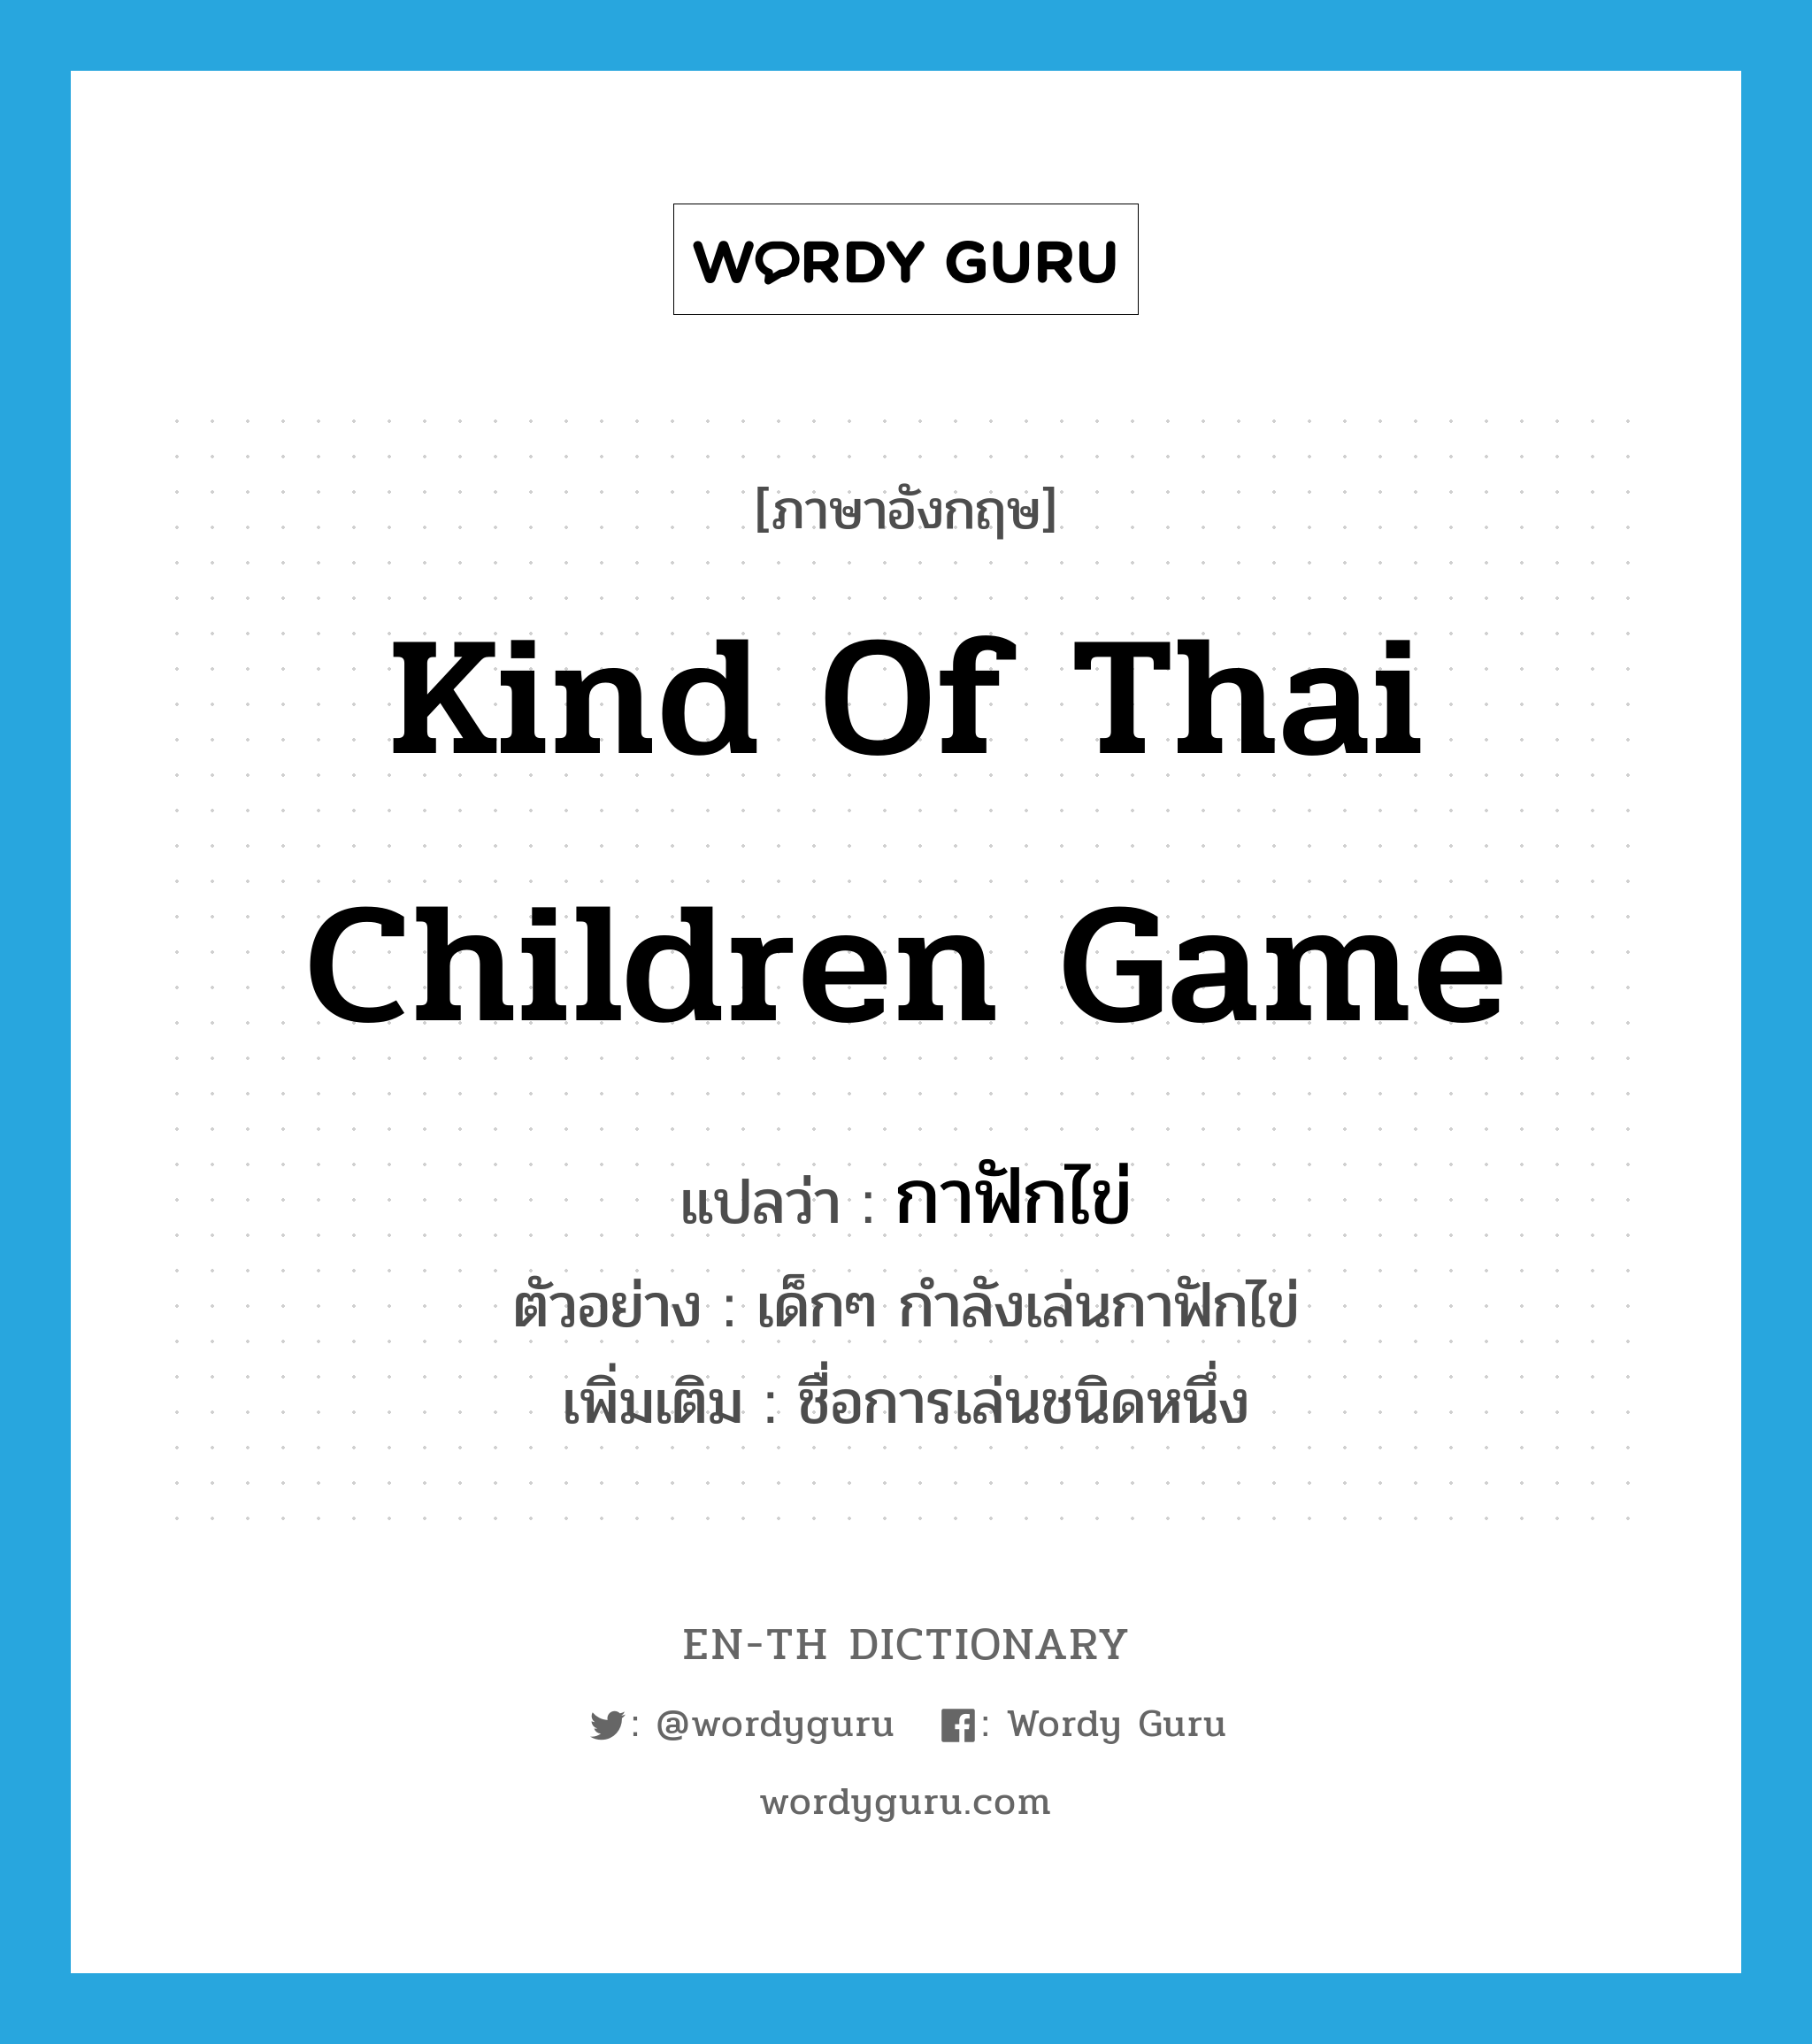 kind of Thai children game แปลว่า?, คำศัพท์ภาษาอังกฤษ kind of Thai children game แปลว่า กาฟักไข่ ประเภท N ตัวอย่าง เด็กๆ กำลังเล่นกาฟักไข่ เพิ่มเติม ชื่อการเล่นชนิดหนึ่ง หมวด N